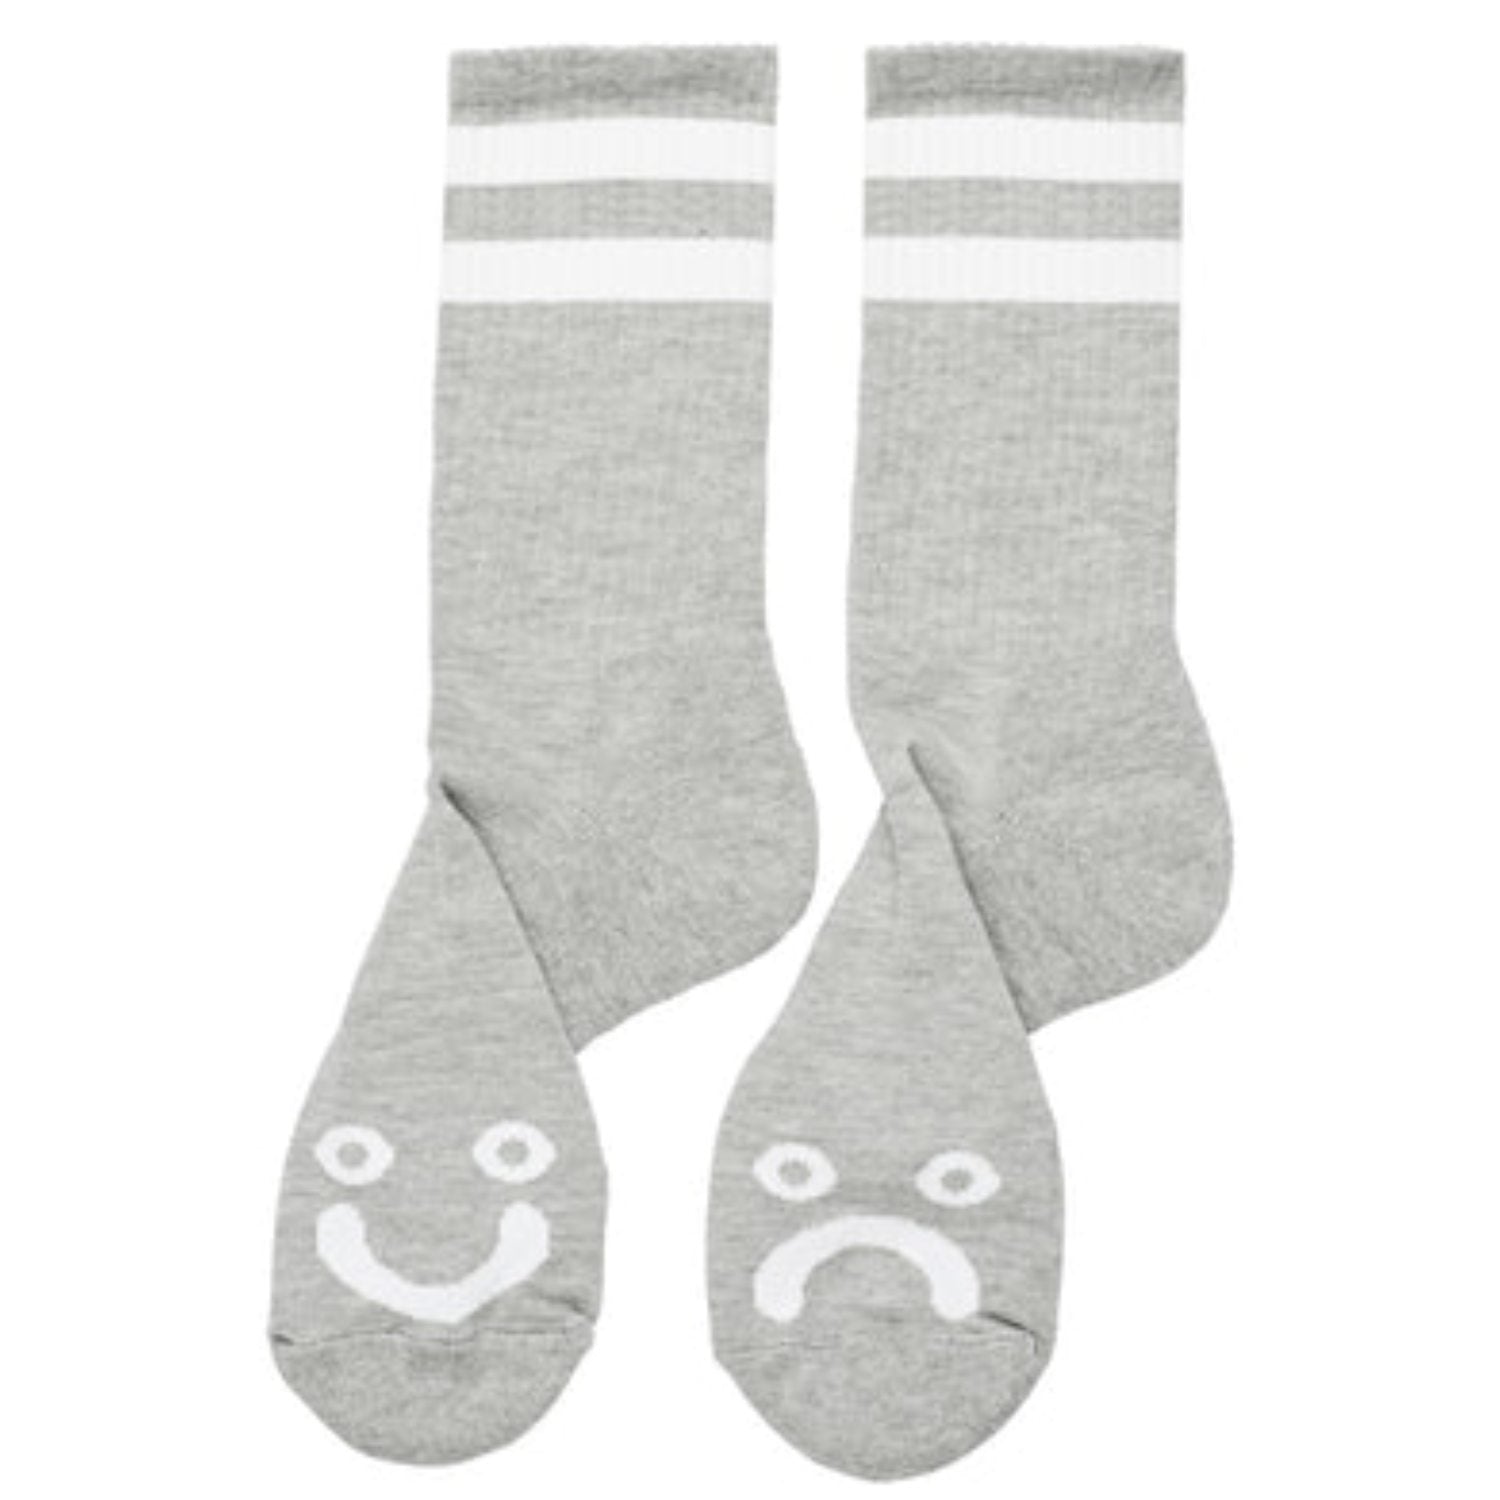 Polar - Happy Sad Socks - Heather Grey - Size 43-45